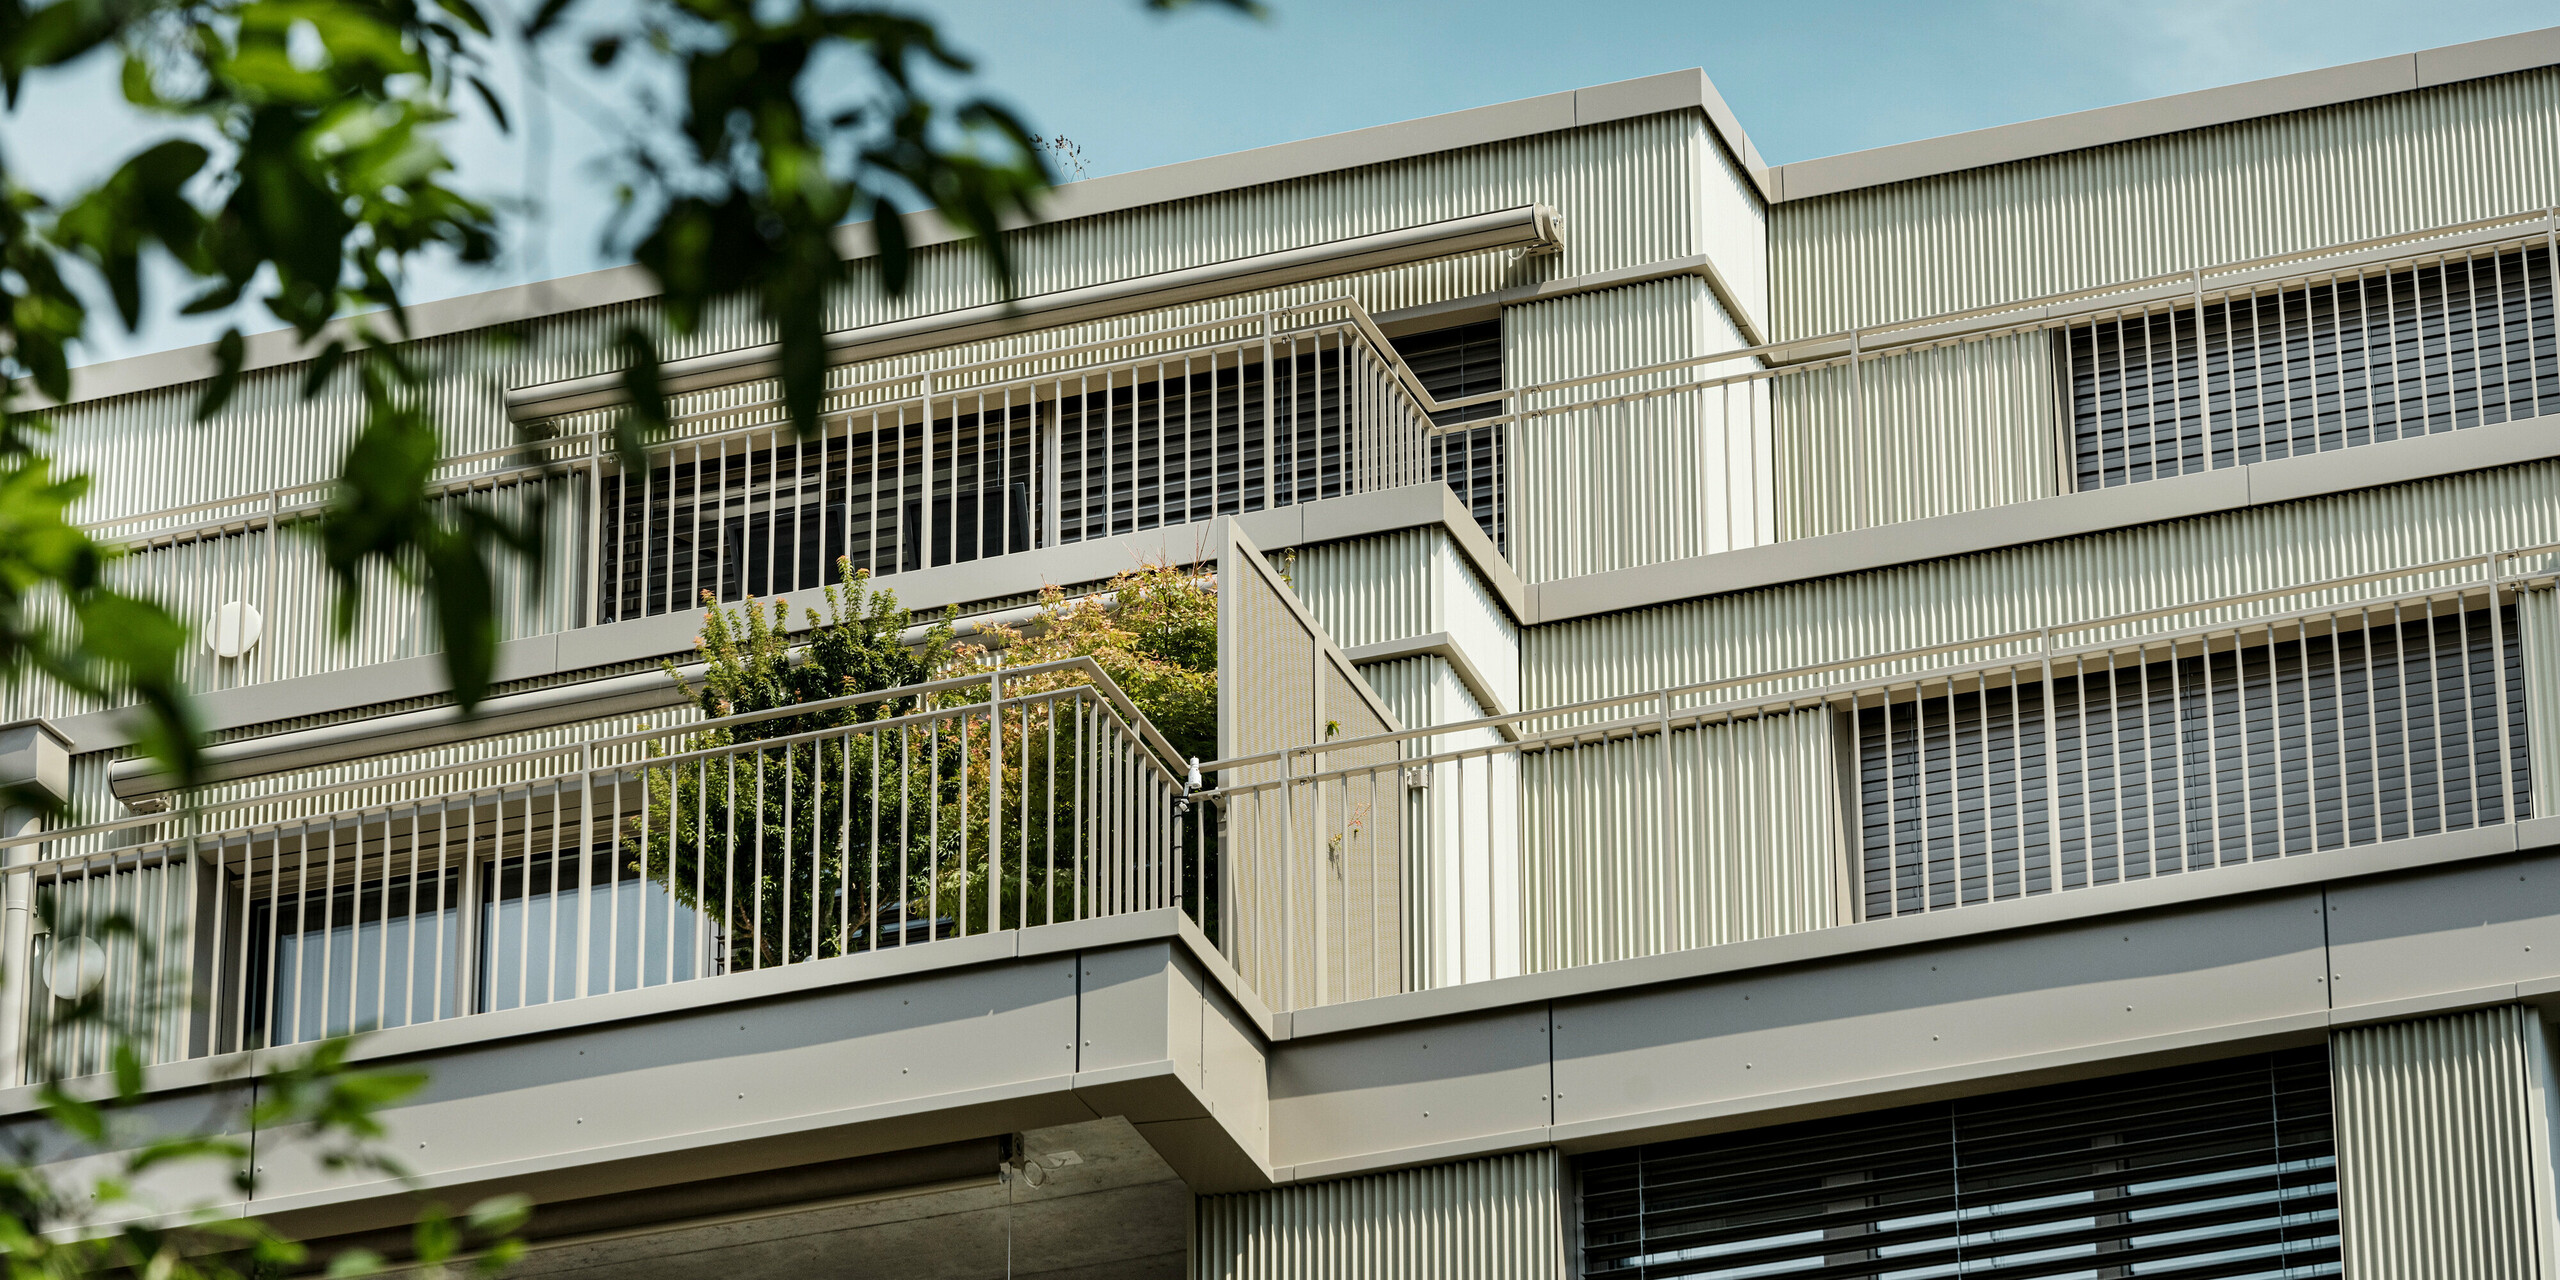 Das moderne Wohngebäude "Stetterhaus" in Altstetten, Zürich wird umhüllt von einer einzigartigen Fassade - PREFA Zackenprofil in der Sonderfarbe Perl-Metallic.